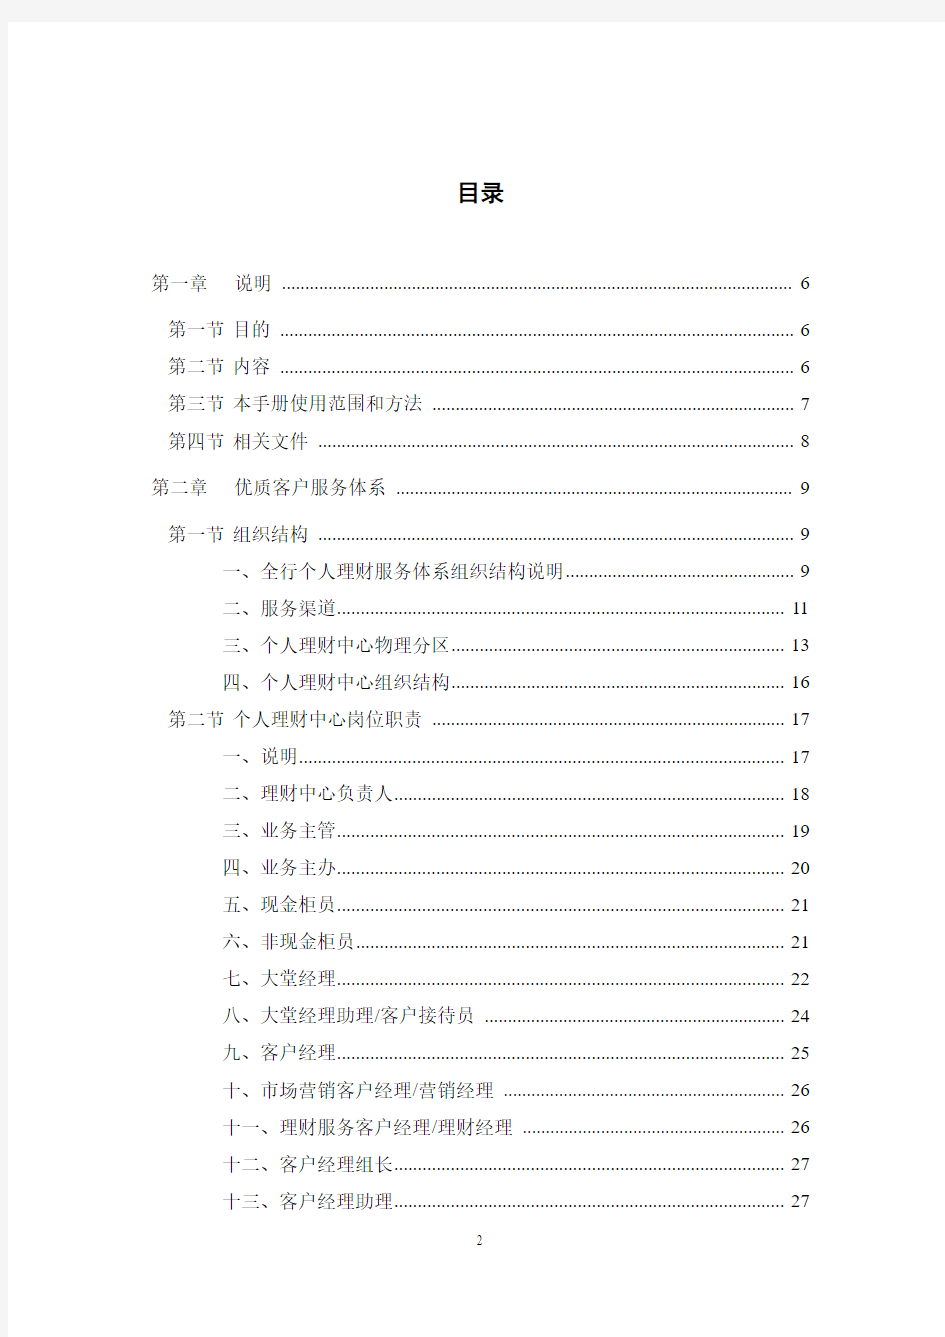 中国工商银行个人理财中心运营及管理手册2.0资料